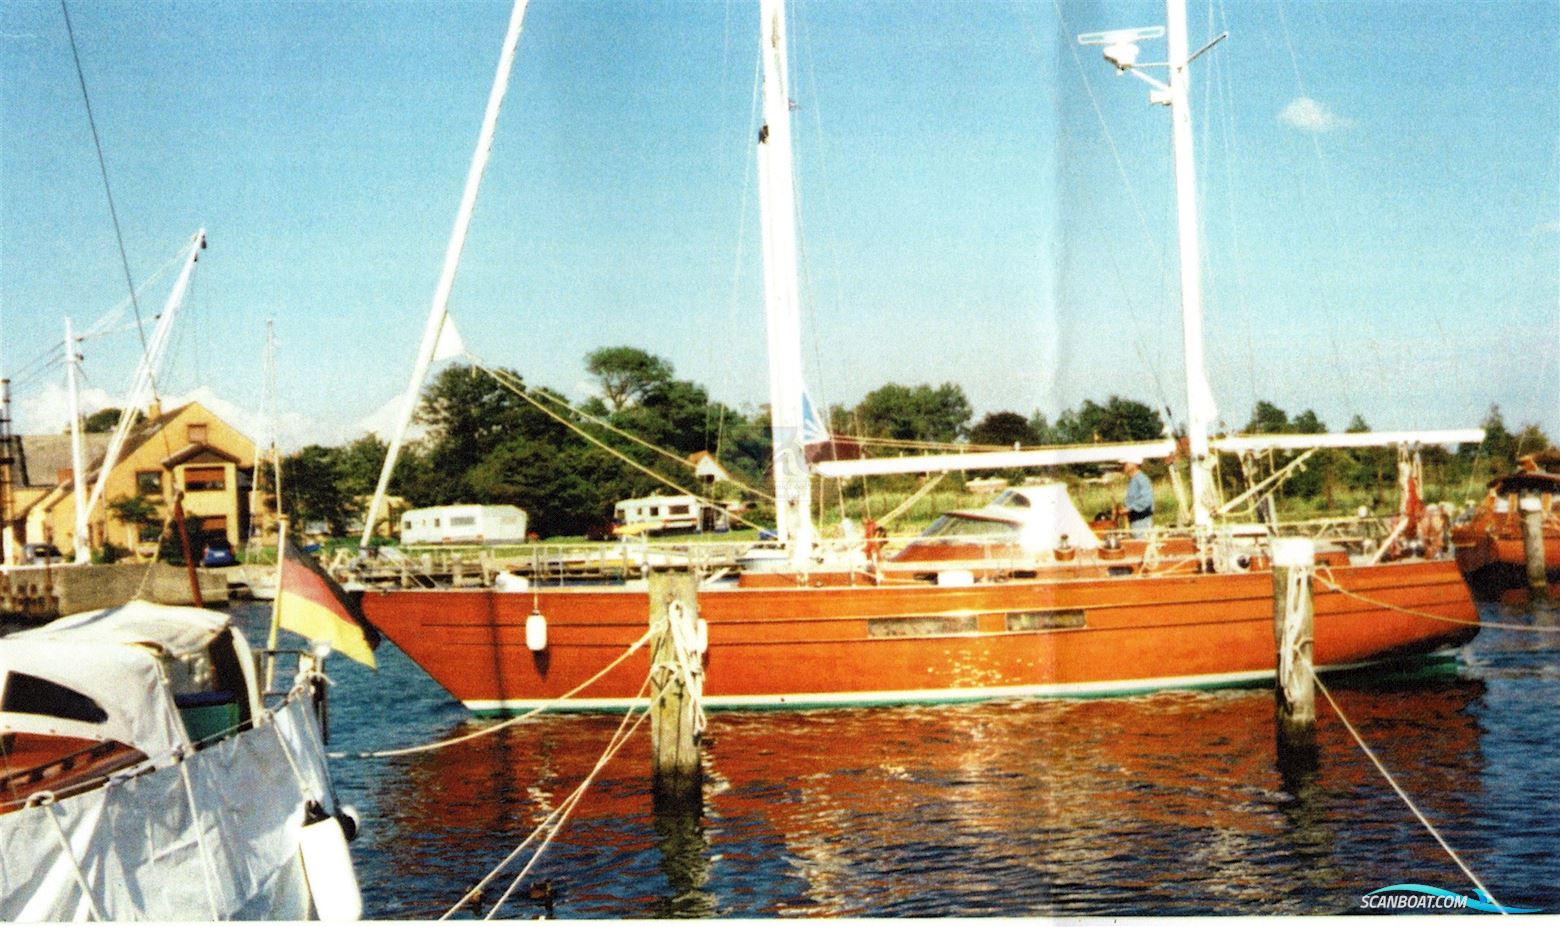 Matthiesen & Paulsen 14m Mahagoni Ketsch M&P Sejlbåd 1985, med Mercedes OM617 motor, Tyskland